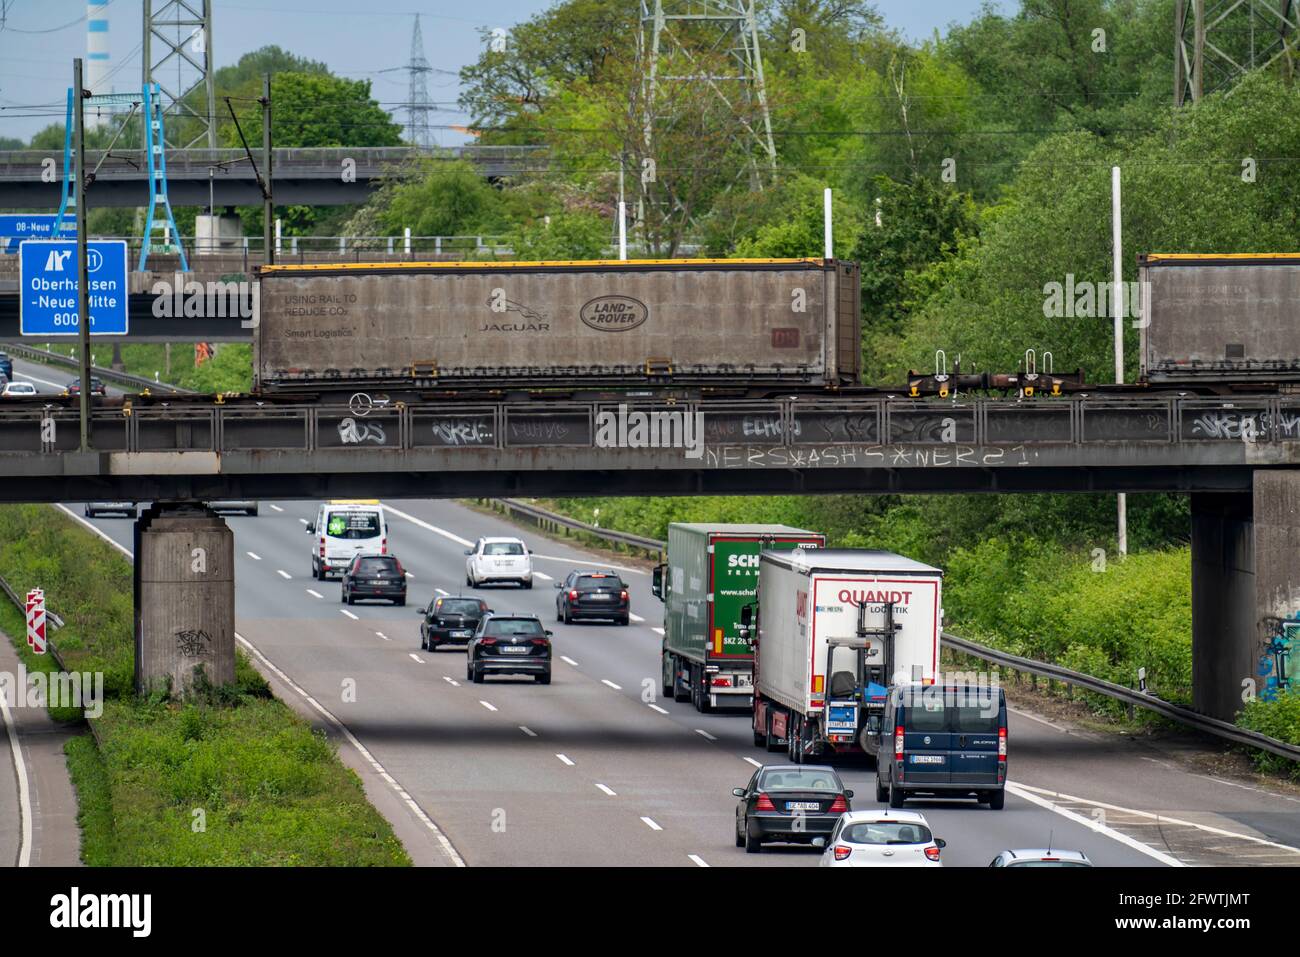 Truck traffic on the A42 motorway, Emscherschnellweg, railway bridge with goods train, Oberhausen, NRW, Germany Stock Photo